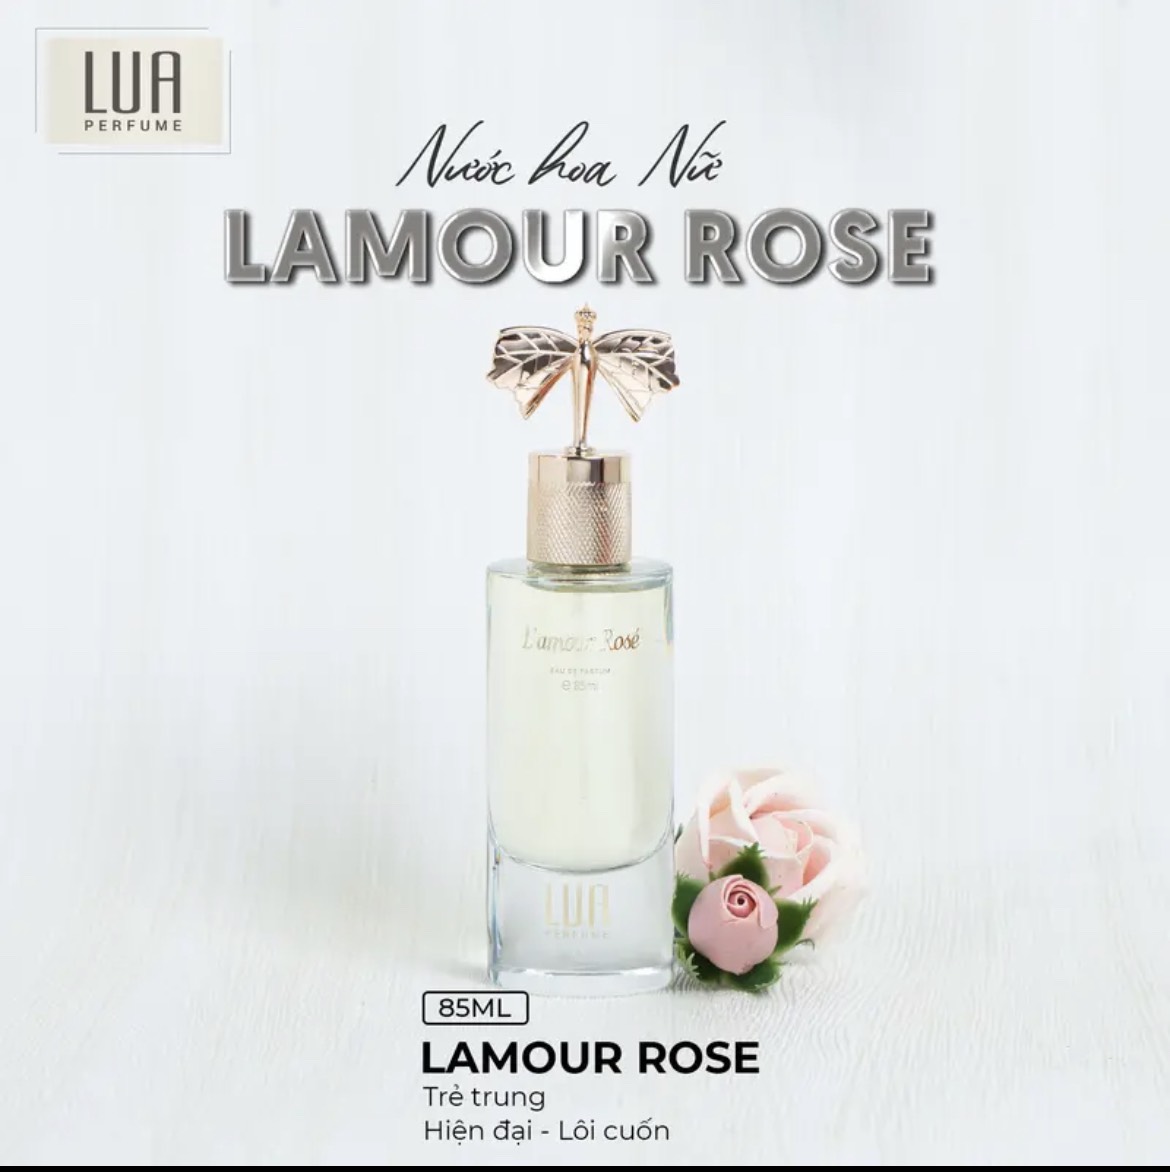 Bạn chọn ngọt ngào - tự tin ⇒ hãy chọn Lamour Rose